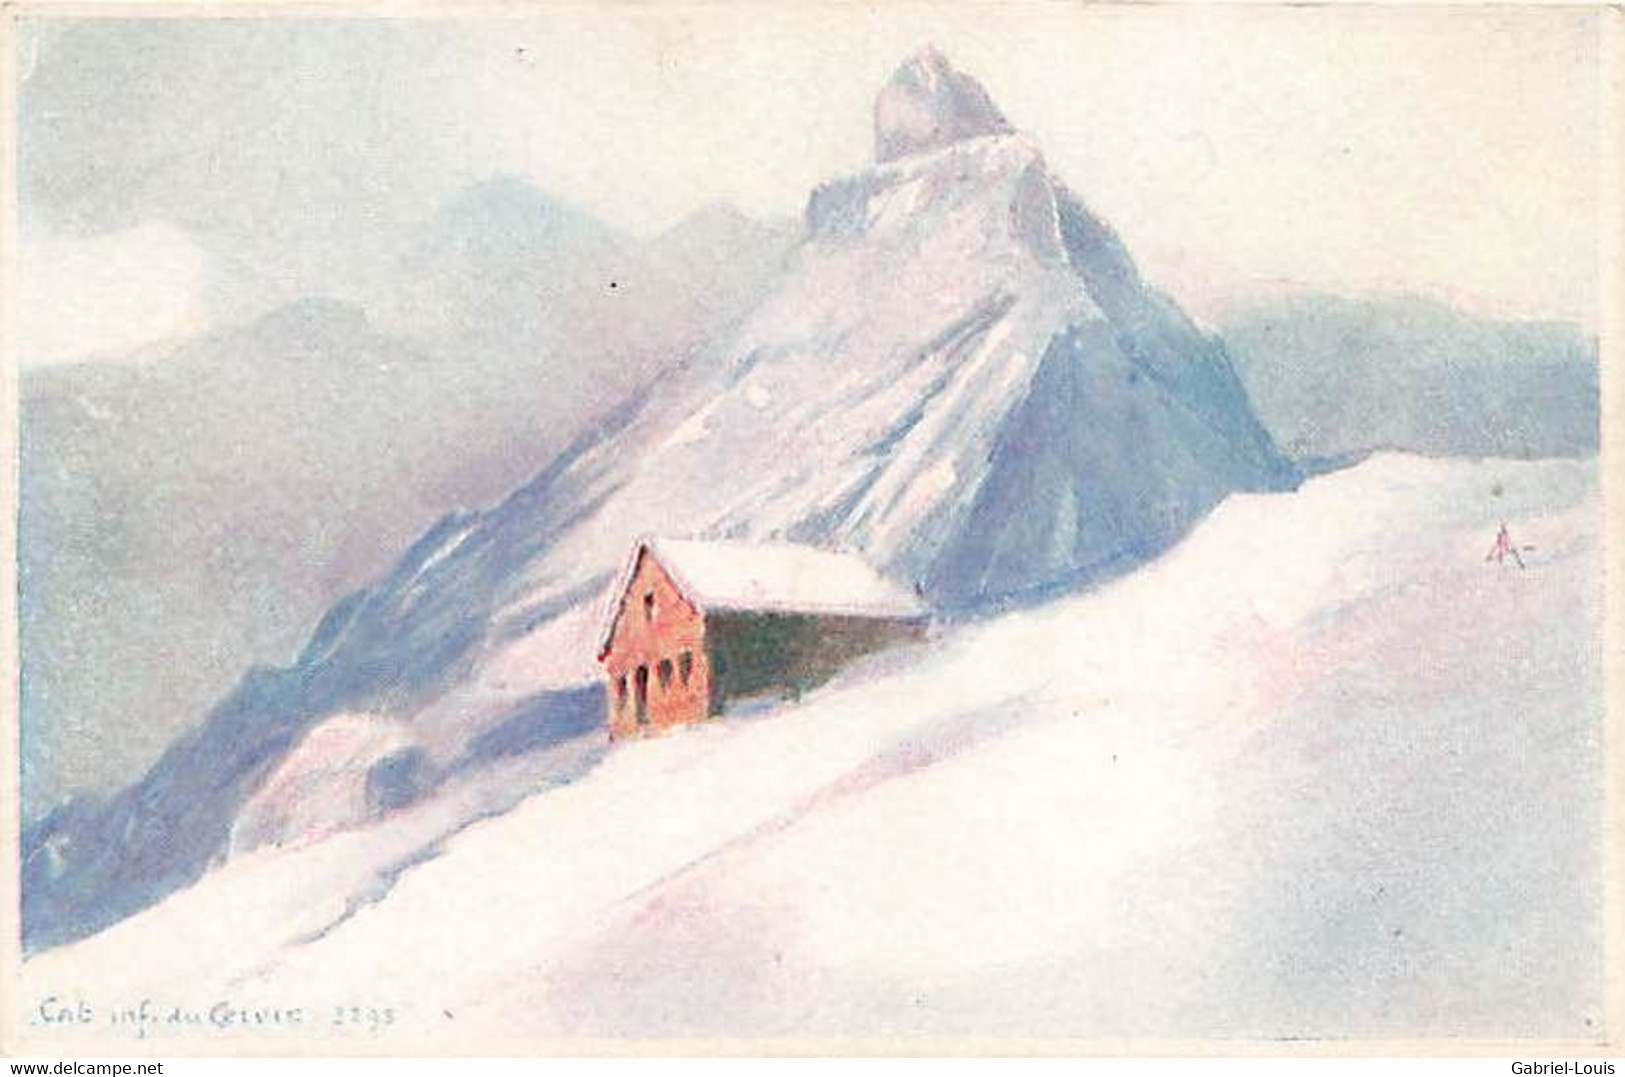 Cabane Du Cervin Zermatt Matterhorn - Zermatt